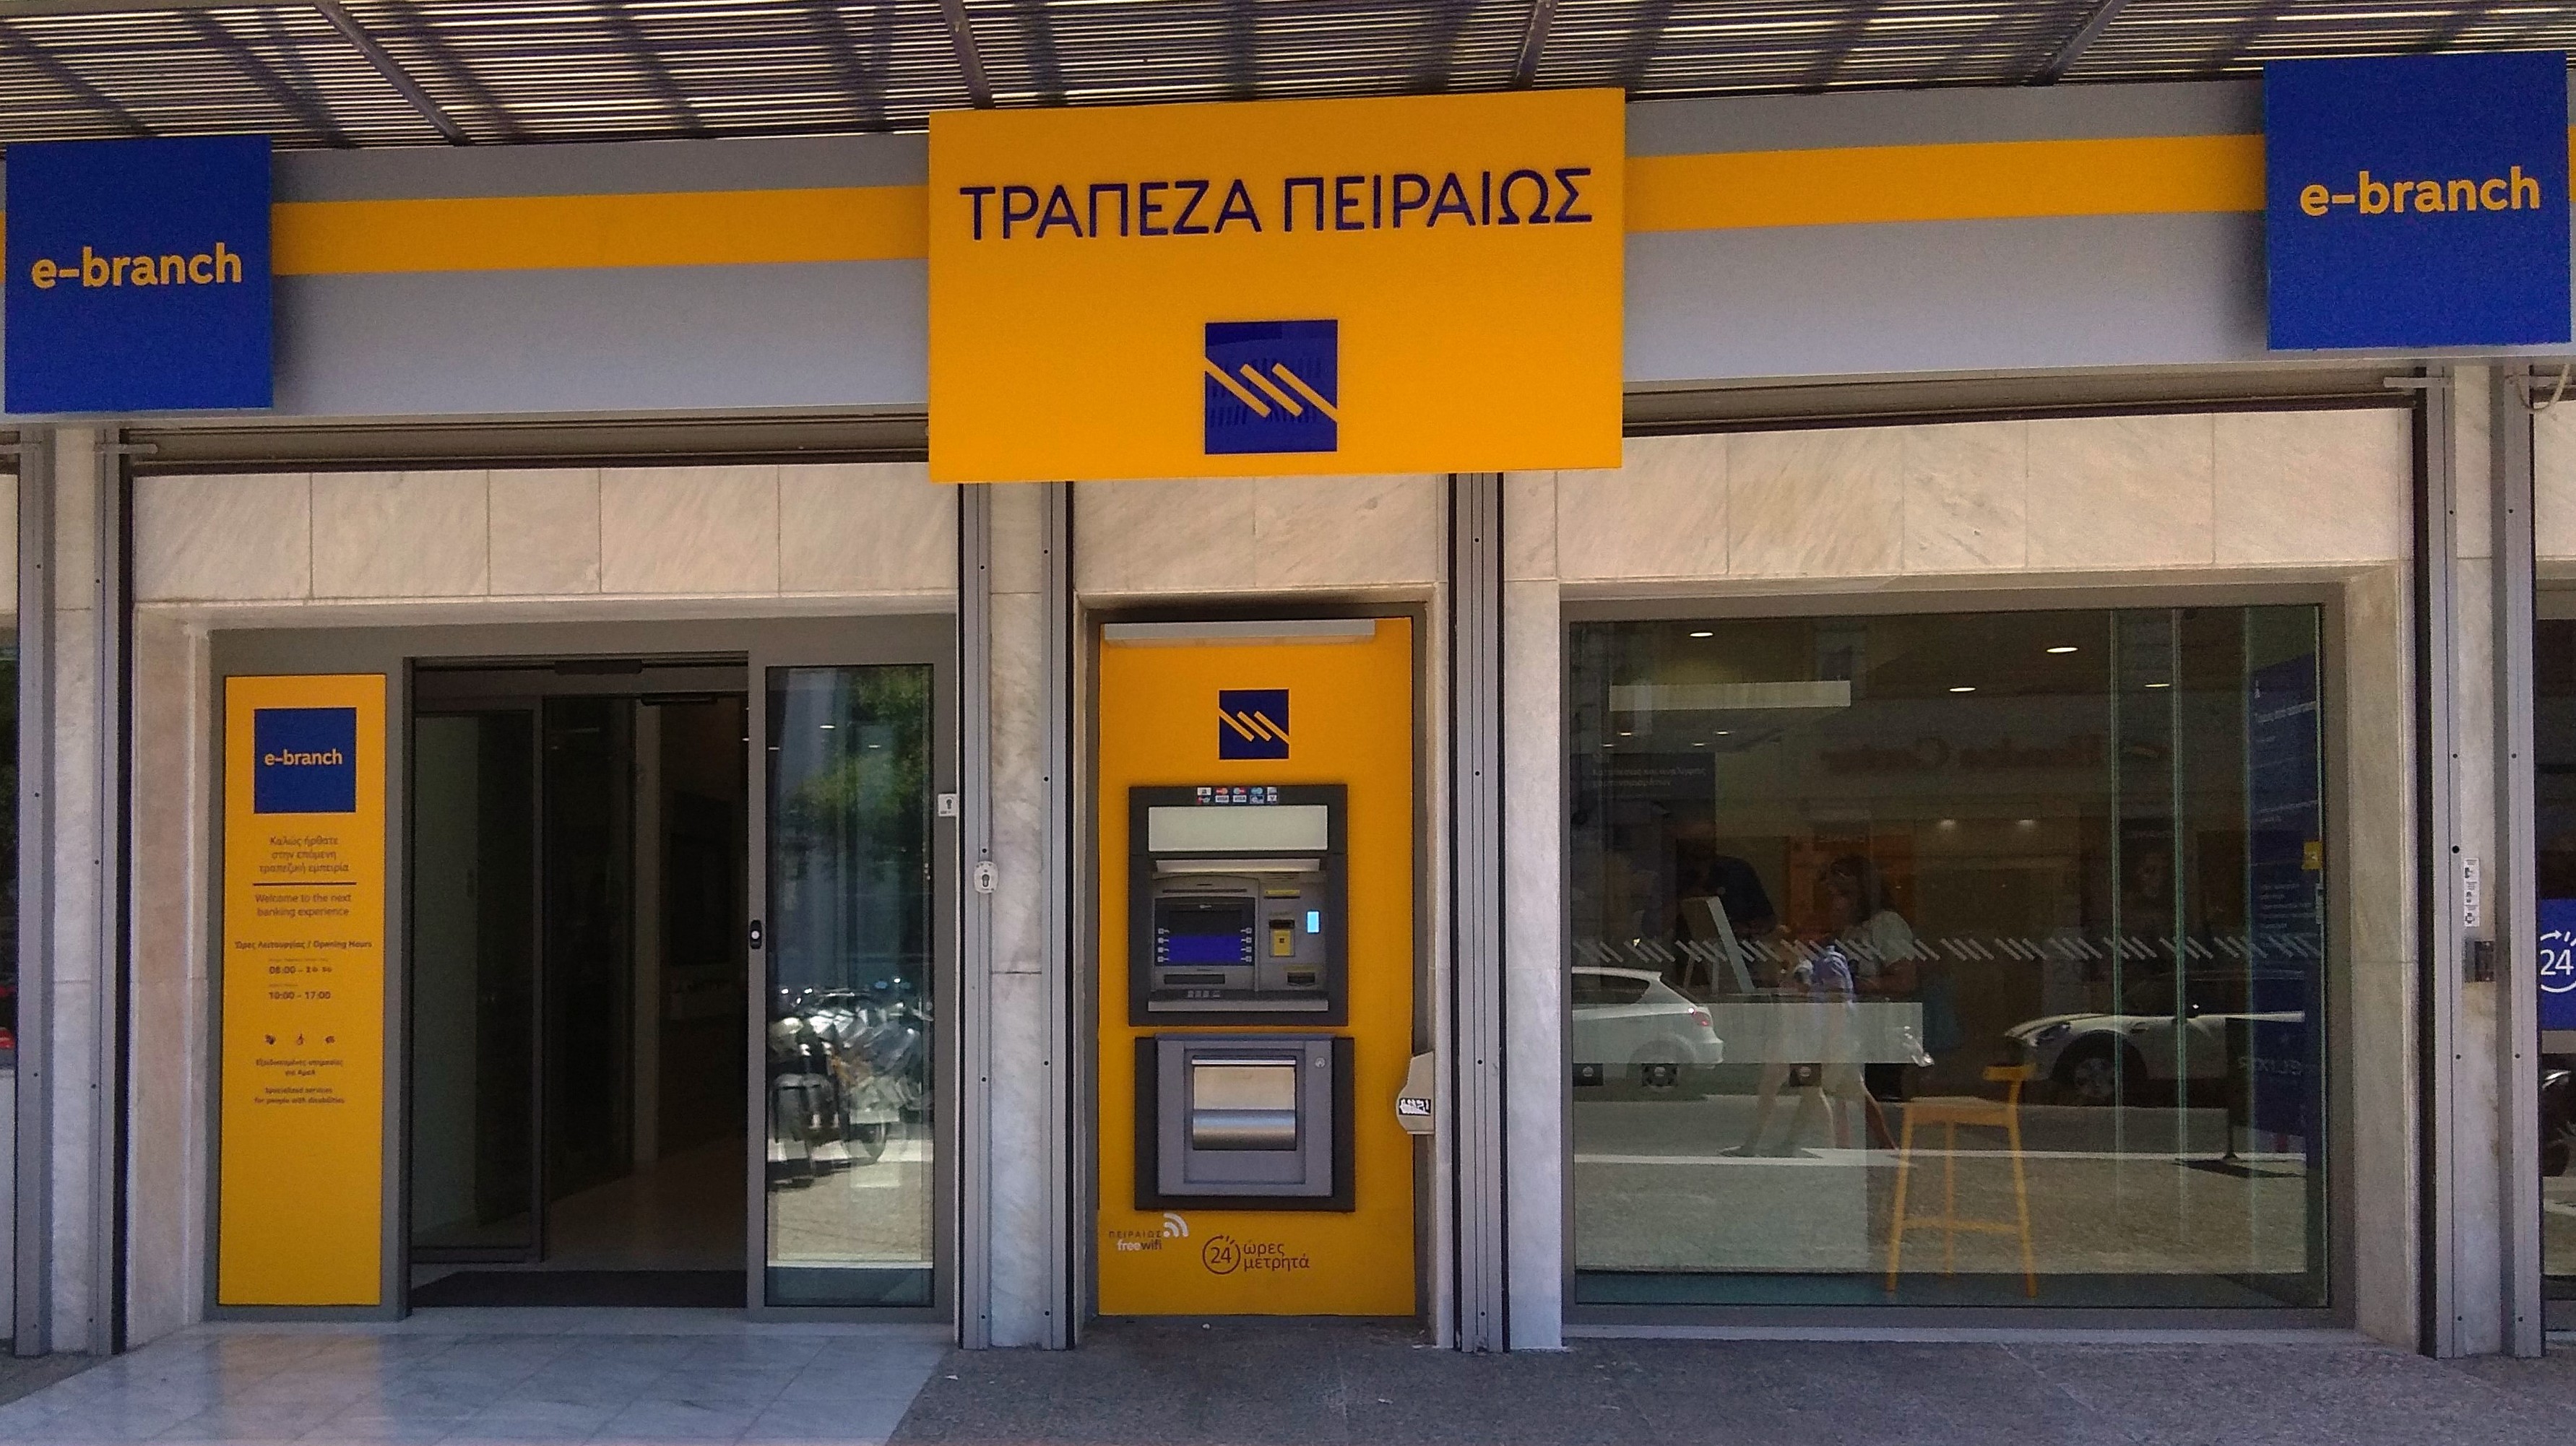 Νέο e-branch της Τράπεζας Πειραιώς στο κέντρο των Χανίων